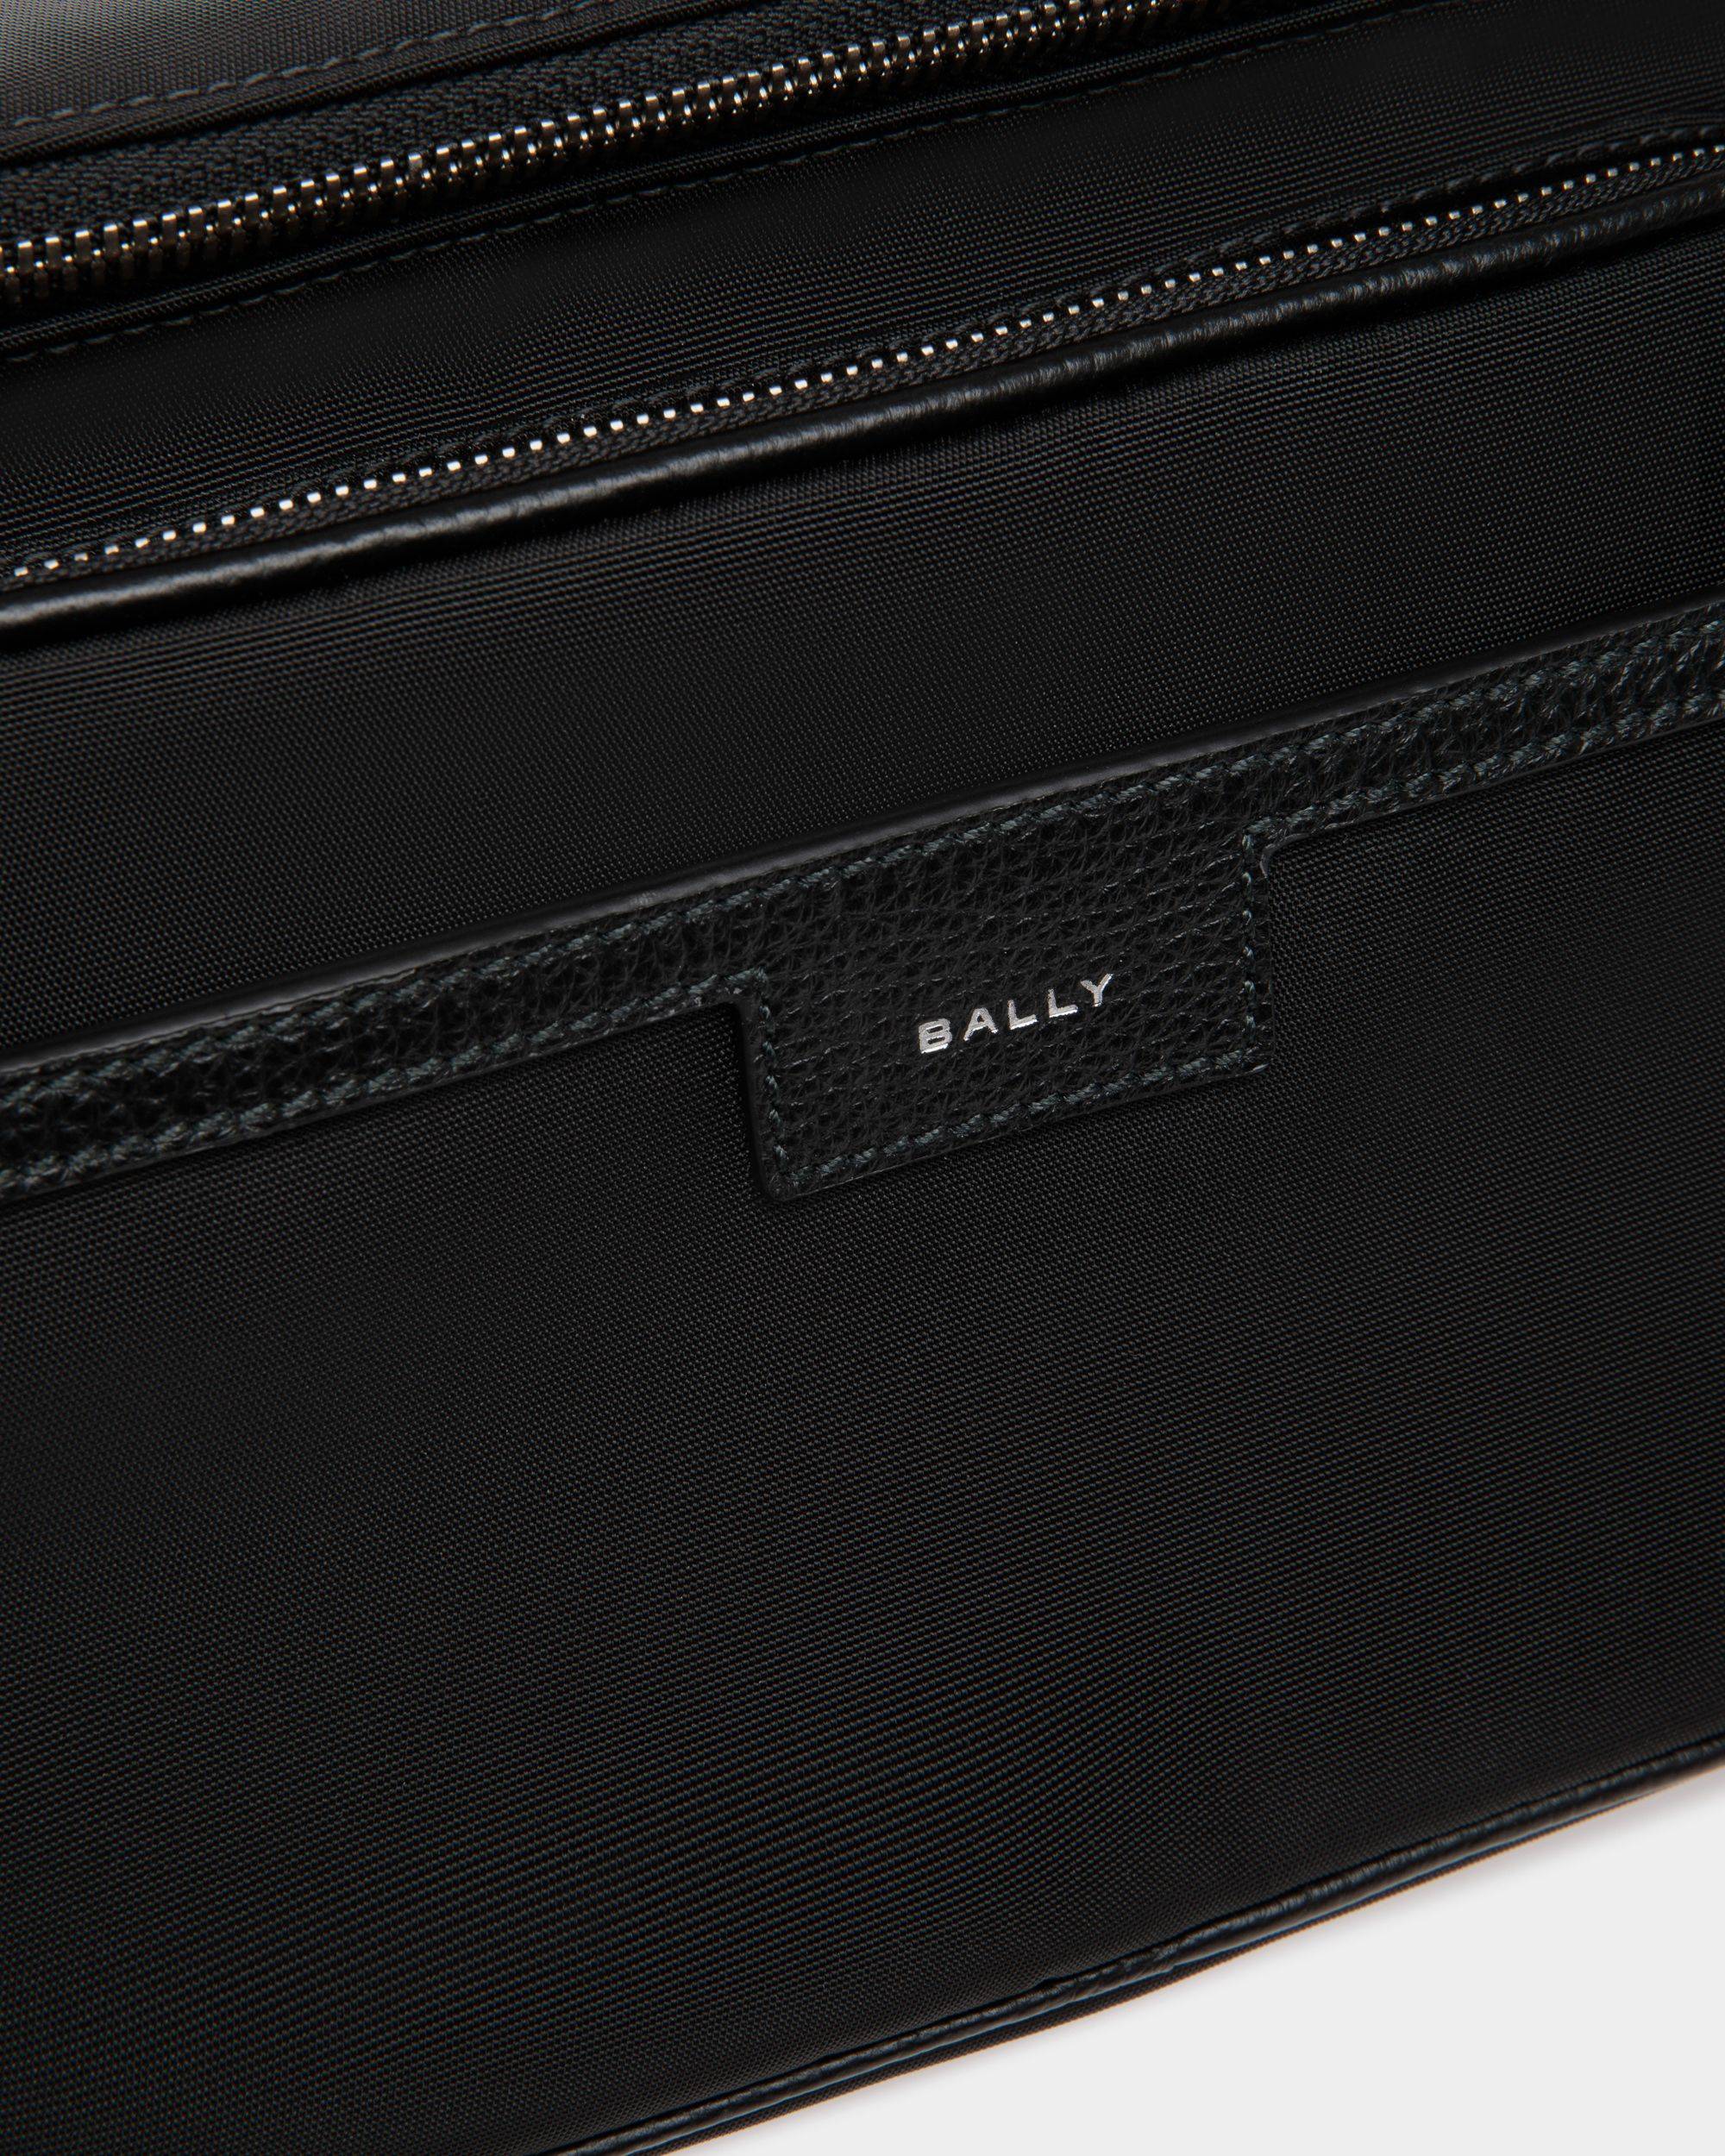 Code | Men's Belt Bag in Black Nylon | Bally | Still Life Detail